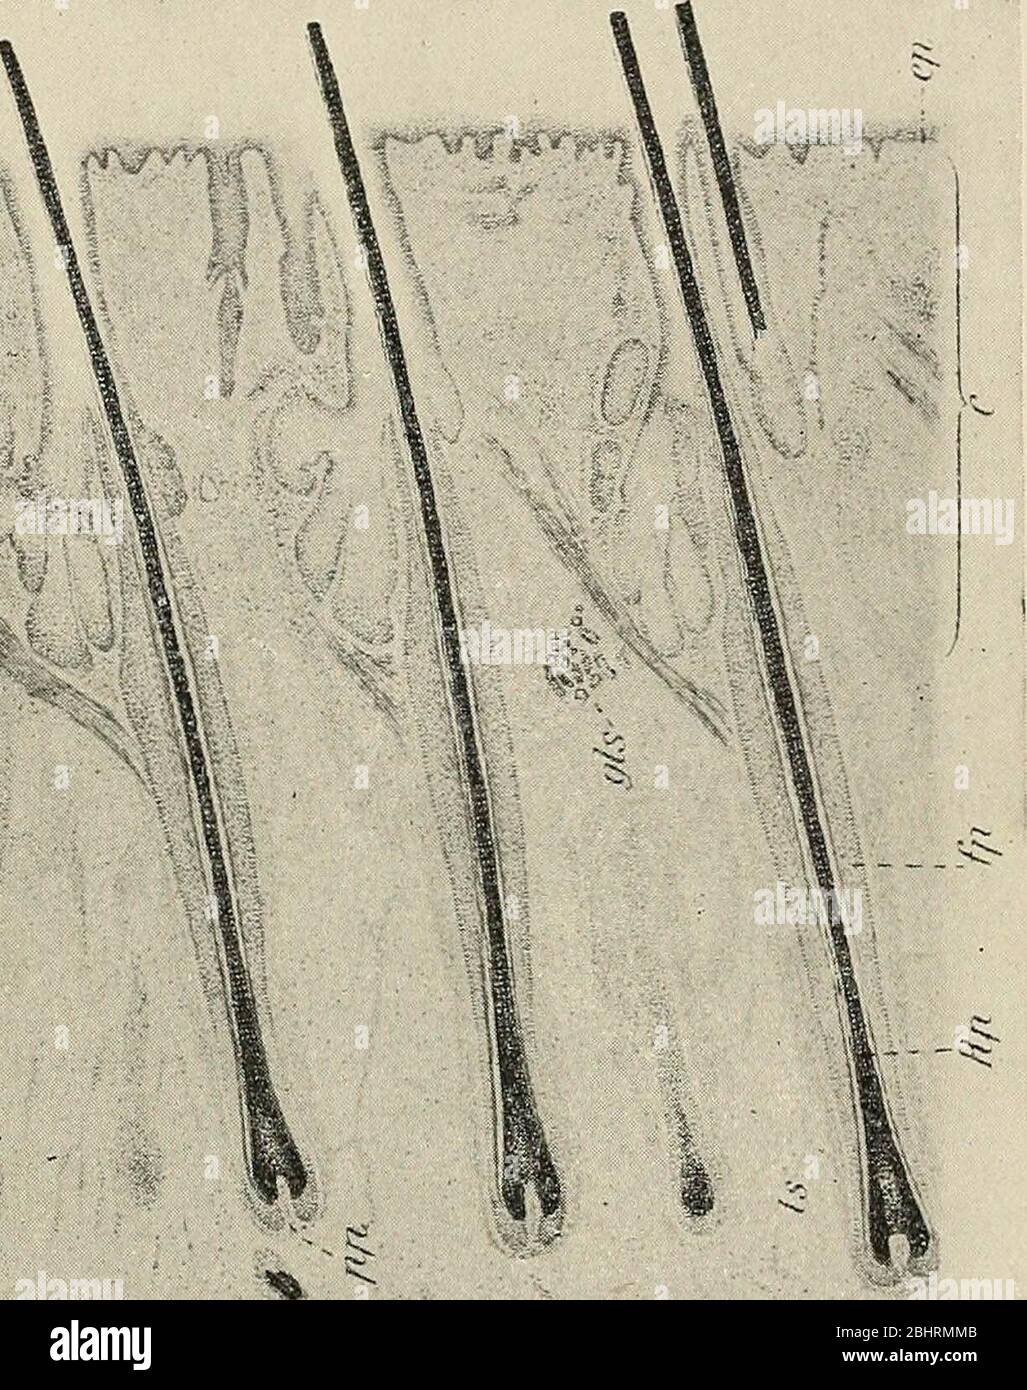 'Das Problem von Alter, Wachstum und Tod; eine Studie zur Zytomorphose, basierend auf Vorlesungen am Lowell Institute, März 1907' (1908) Stockfoto